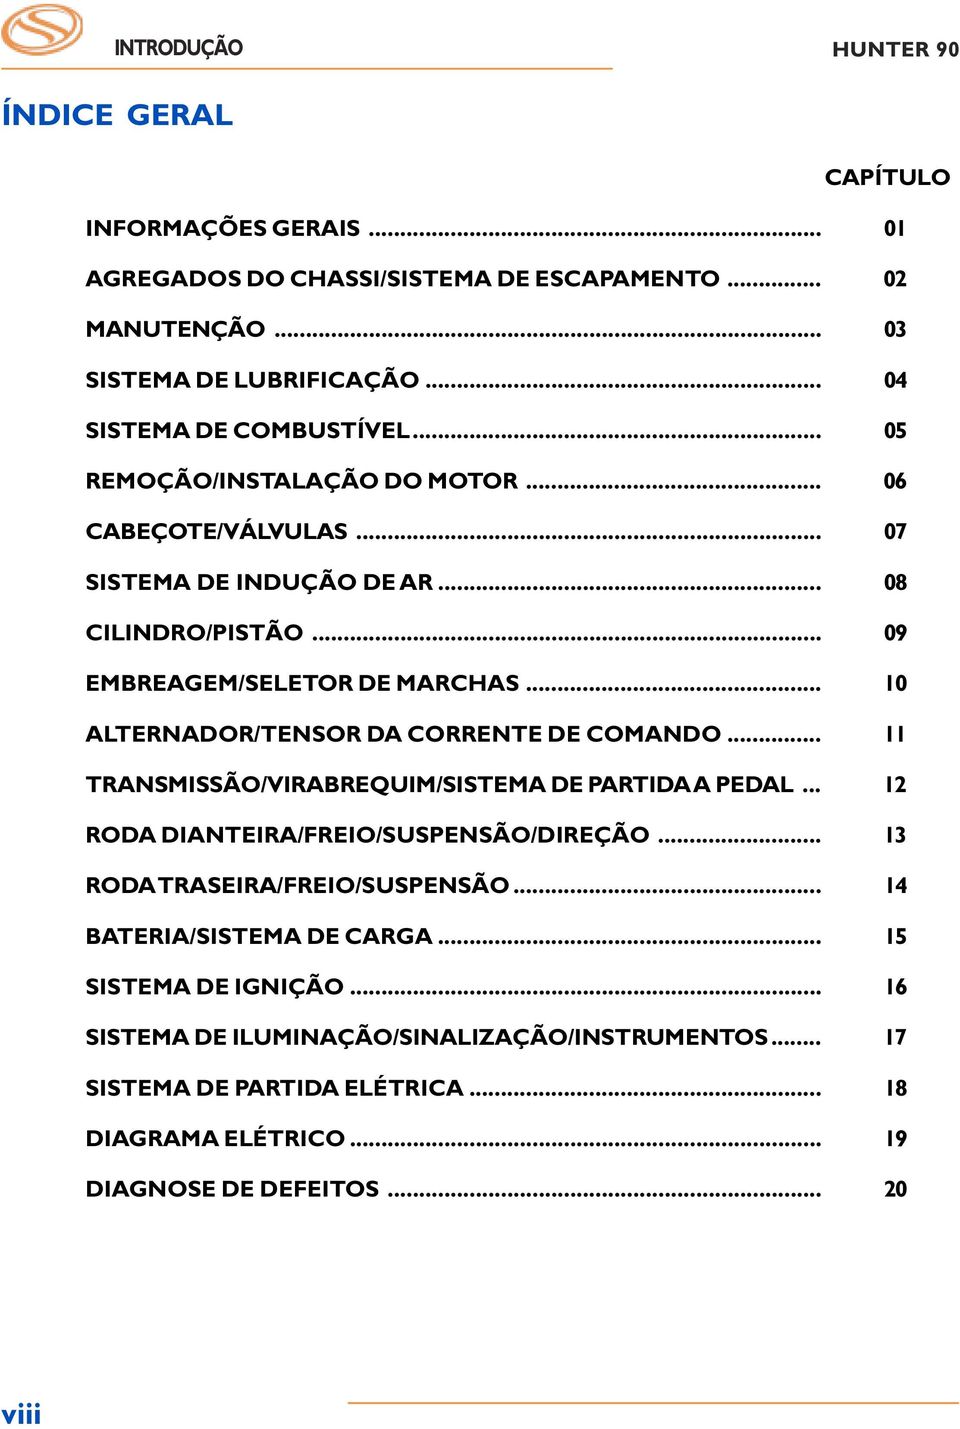 .. 0 ALTERNADOR/TENSOR DA CORRENTE DE COMANDO... TRANSMISSÃO/VIRABREQUIM/SISTEMA DE PARTIDA A PEDAL... 2 RODA DIANTEIRA/FREIO/SUSPENSÃO/DIREÇÃO... 3 RODA TRASEIRA/FREIO/SUSPENSÃO.